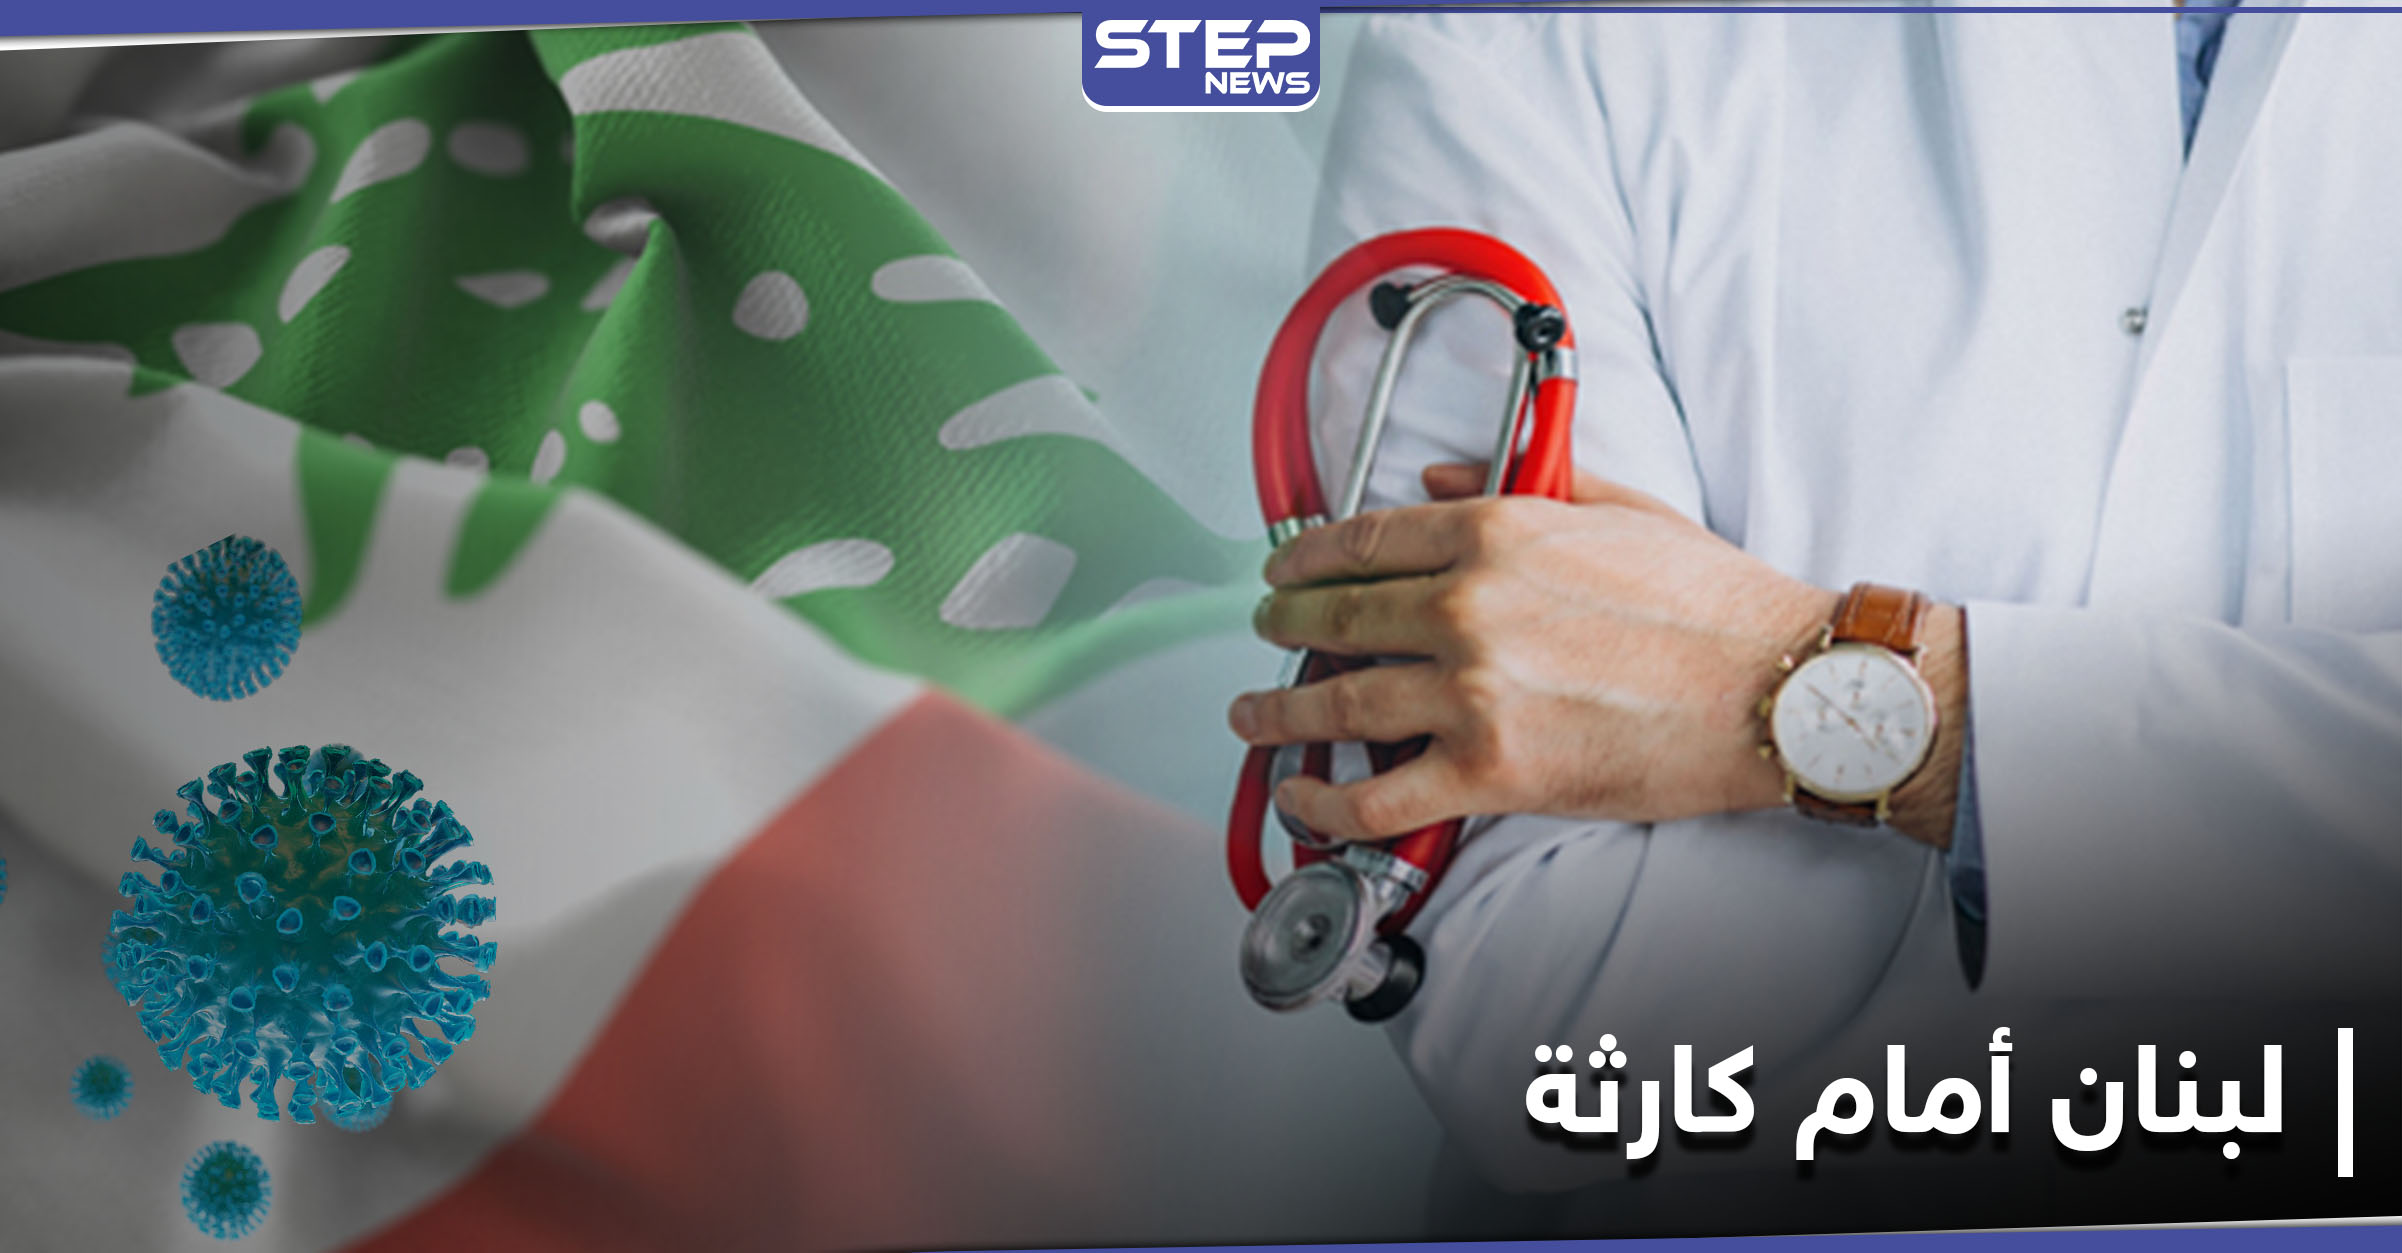 أطباء لبنان يحذّرون من "كارثة" جراء ارتفاع إصابات كورونا